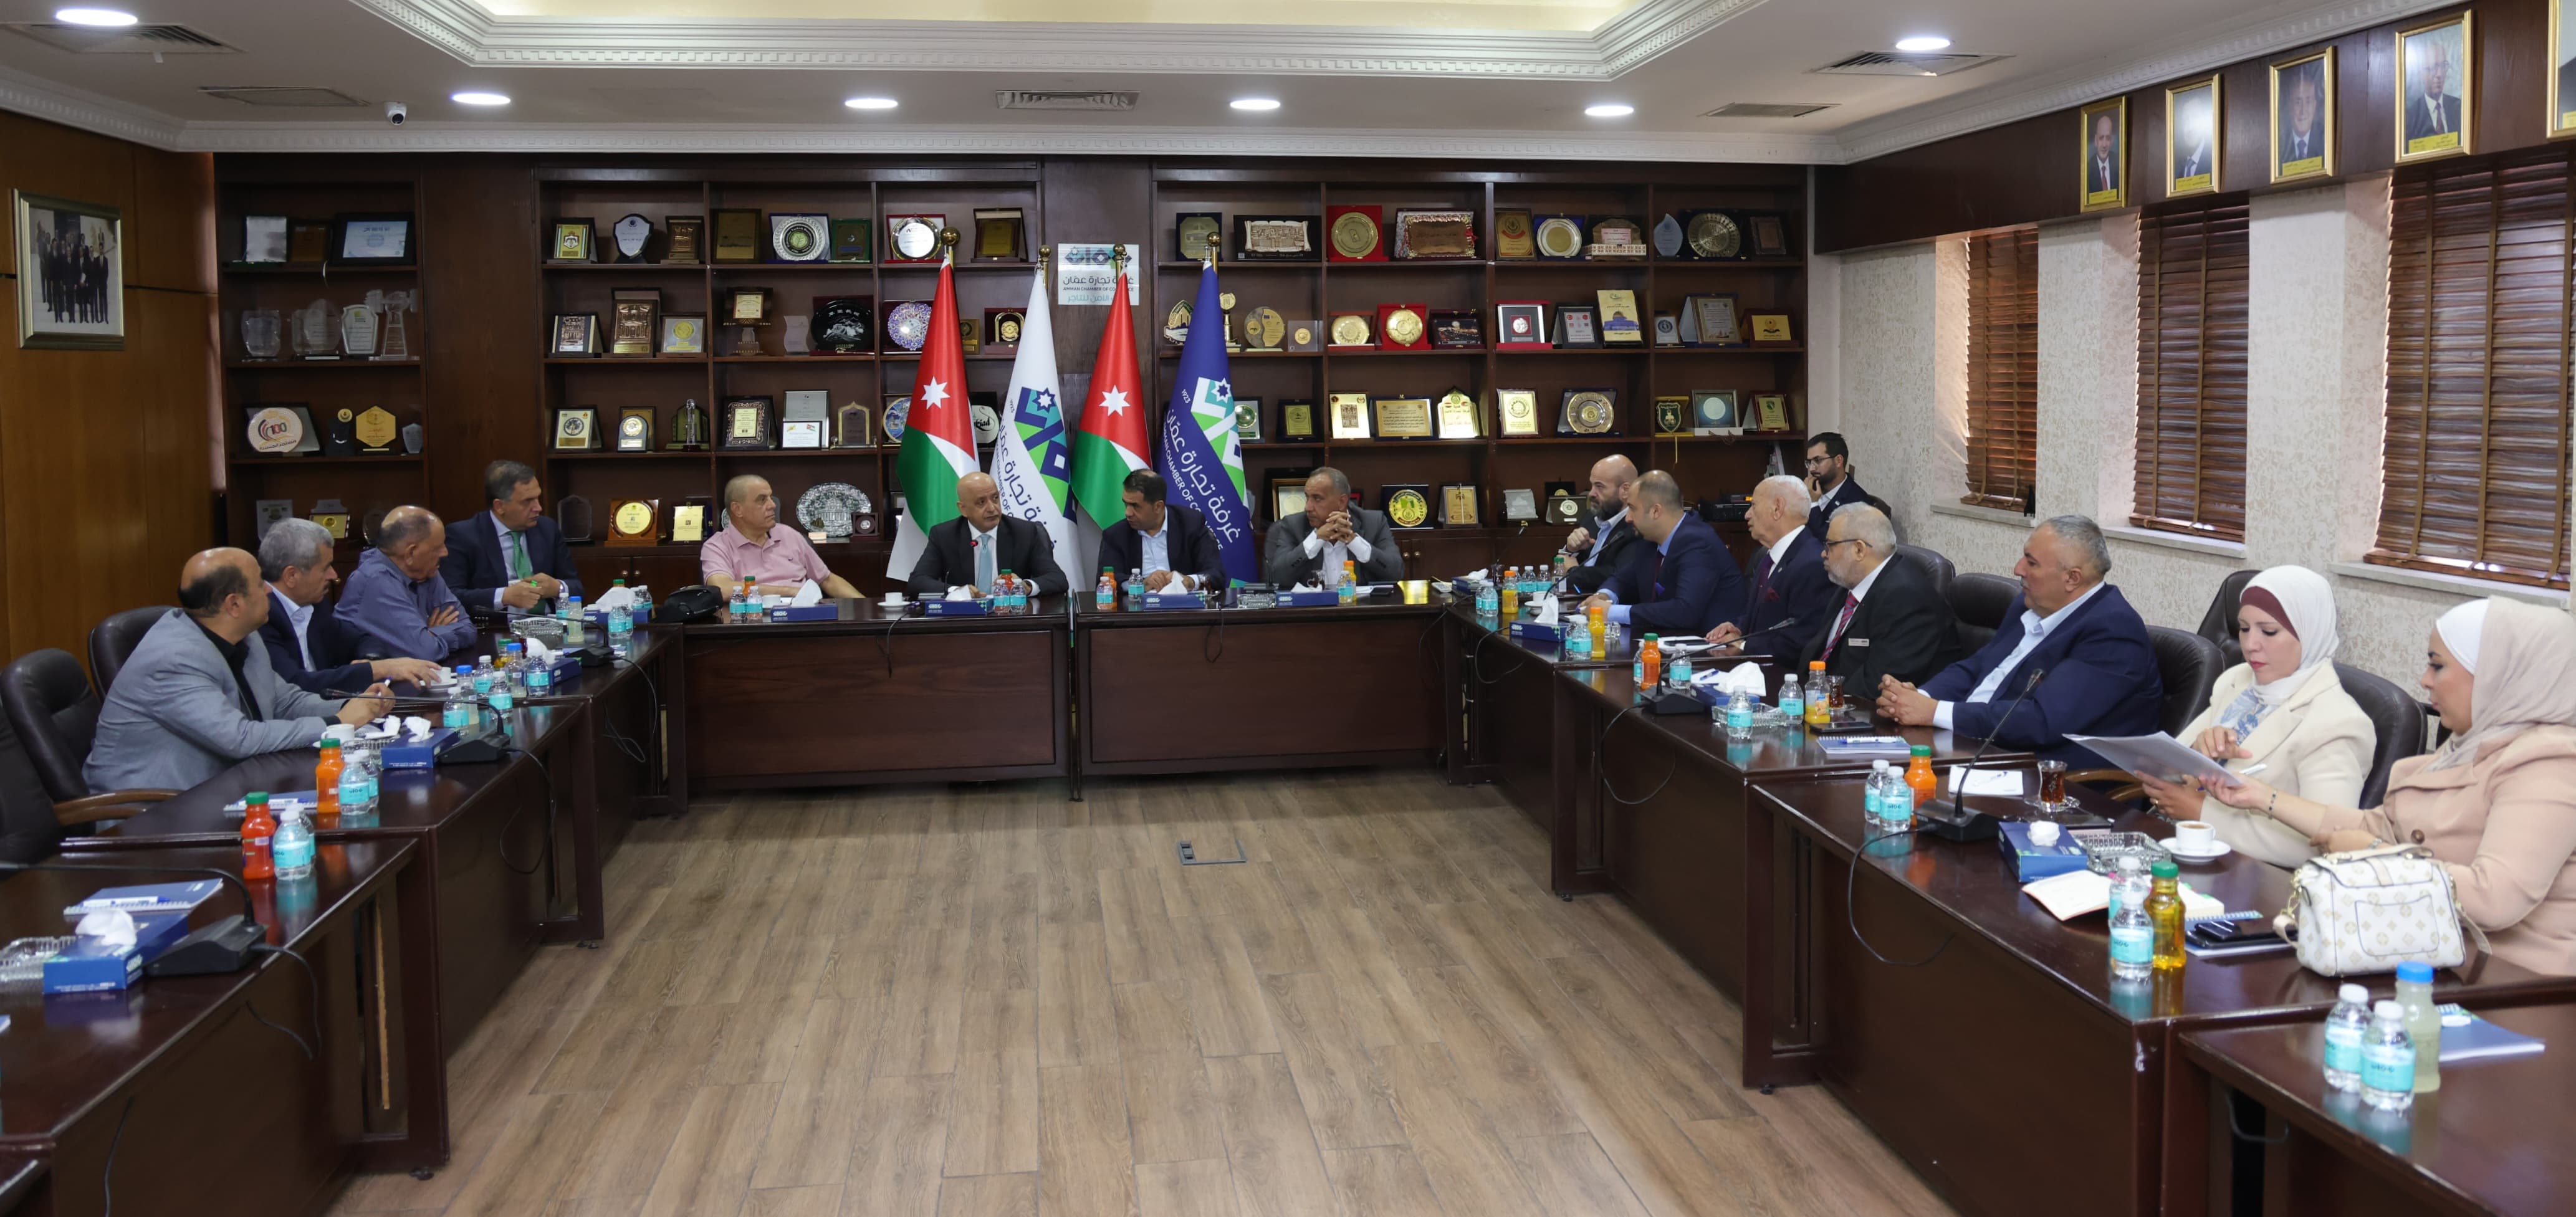 لجنة مشتركة بين تجارة عمان ومجلس العاصمة لتنفيذ مشاريع استثمارية وخدمية